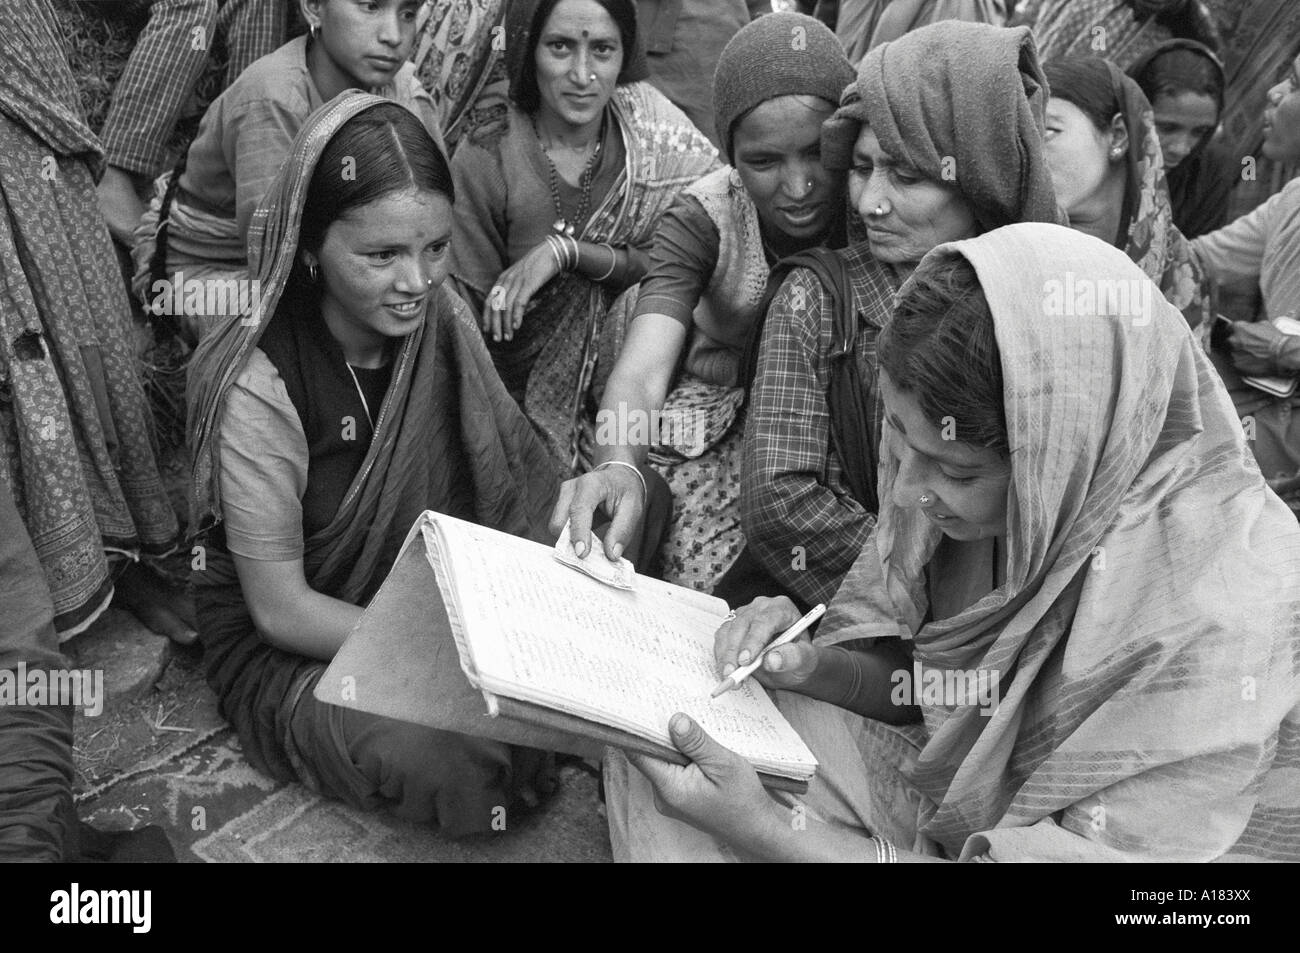 B/W einer Gruppe von Frauen in einer ländlichen Genossenschaft, an der kleine Unternehmen beteiligt sind, die ihre Konten überprüfen. Tehri Garhwal, N. Indien Stockfoto